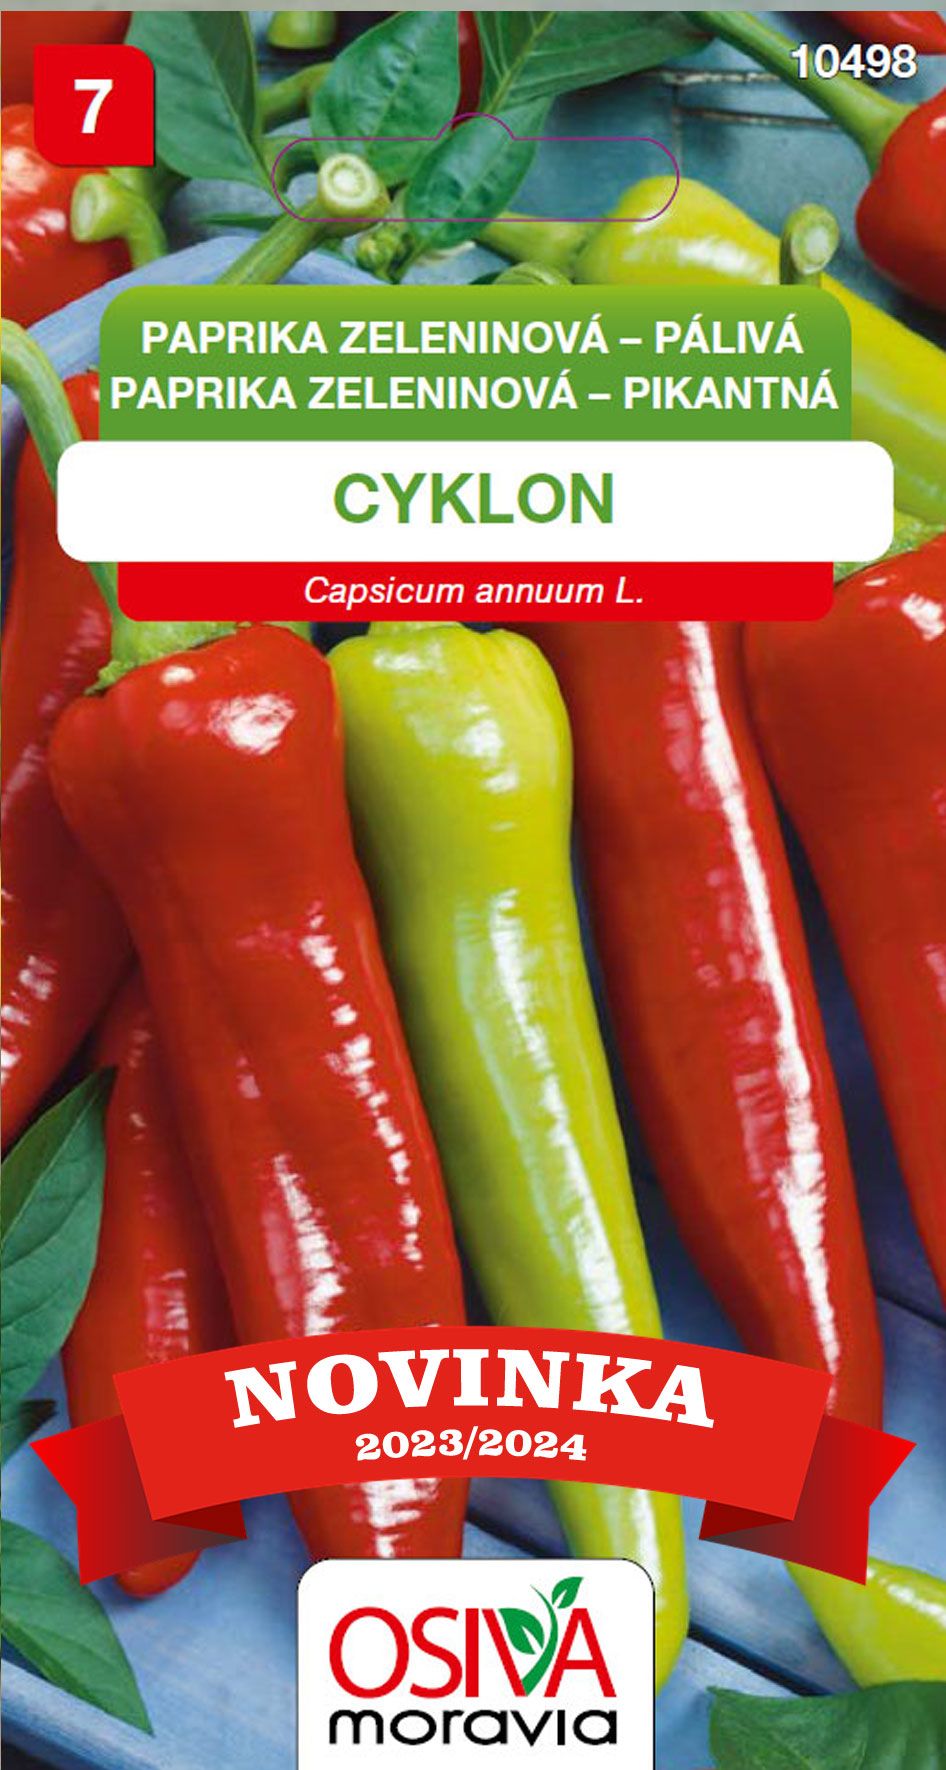 Paprika zeleninová - pálivá - Cyklon